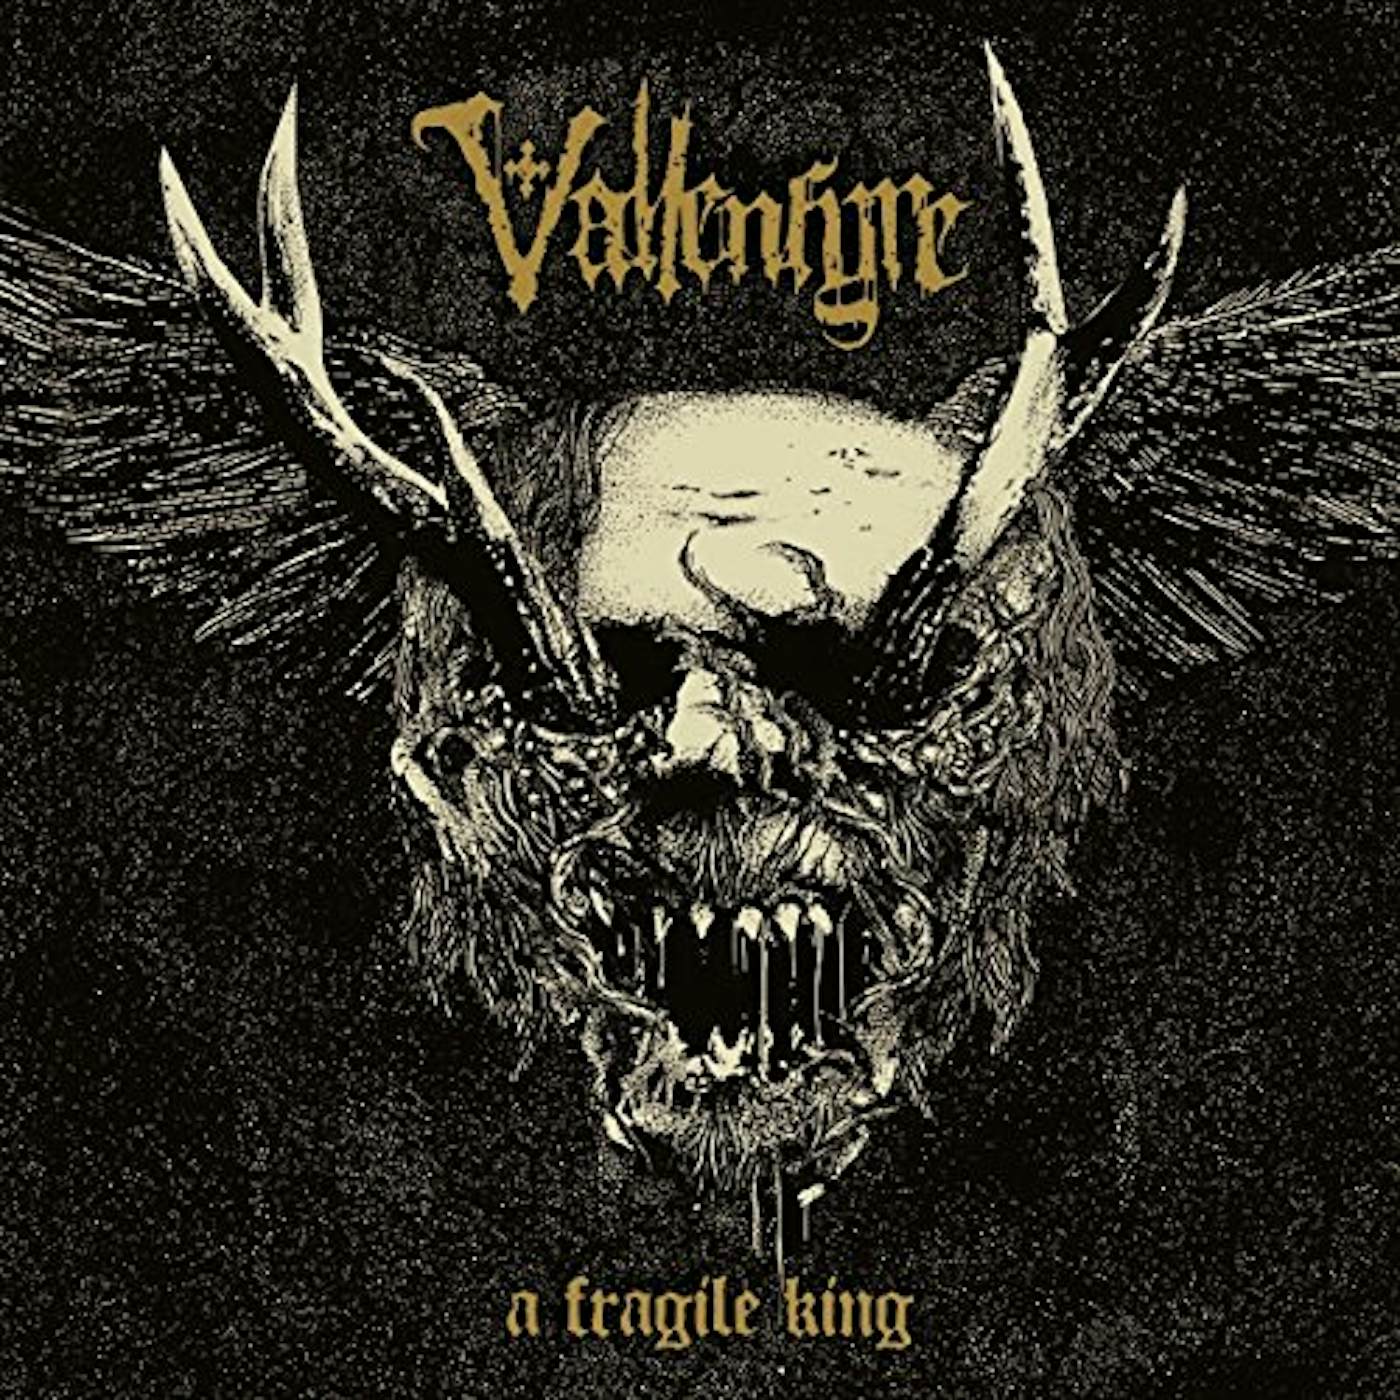 Vallenfyre FRAGILE KING CD - Holland Release